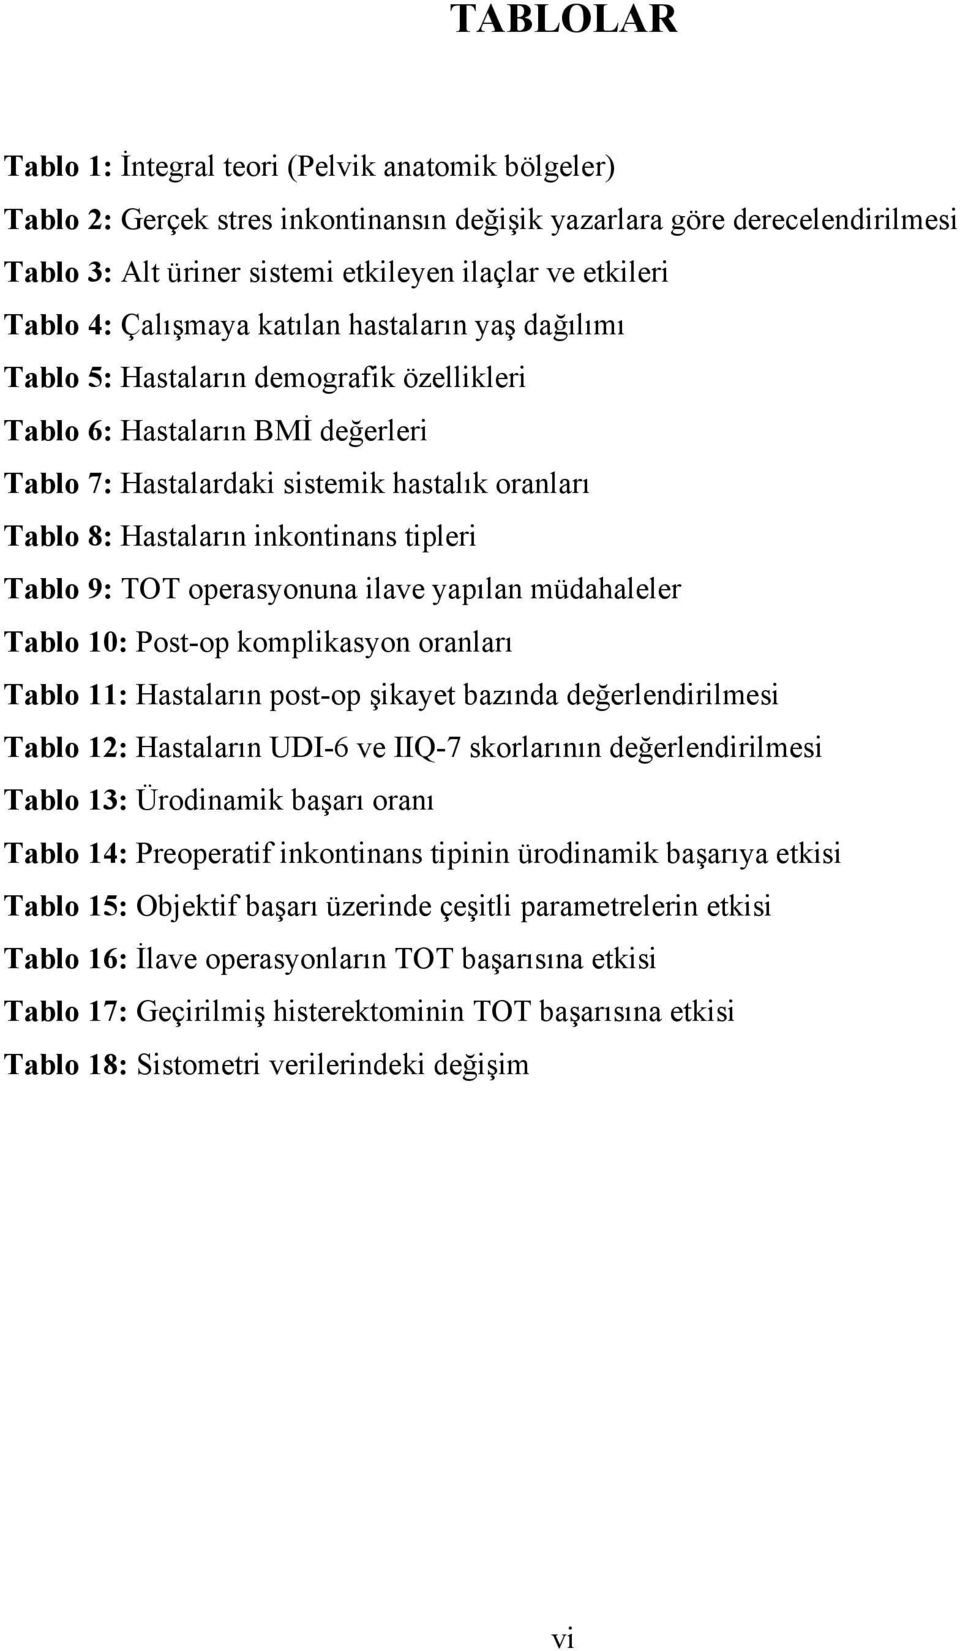 inkontinans tipleri Tablo 9: TOT operasyonuna ilave yapılan müdahaleler Tablo 10: Post-op komplikasyon oranları Tablo 11: Hastaların post-op şikayet bazında değerlendirilmesi Tablo 12: Hastaların